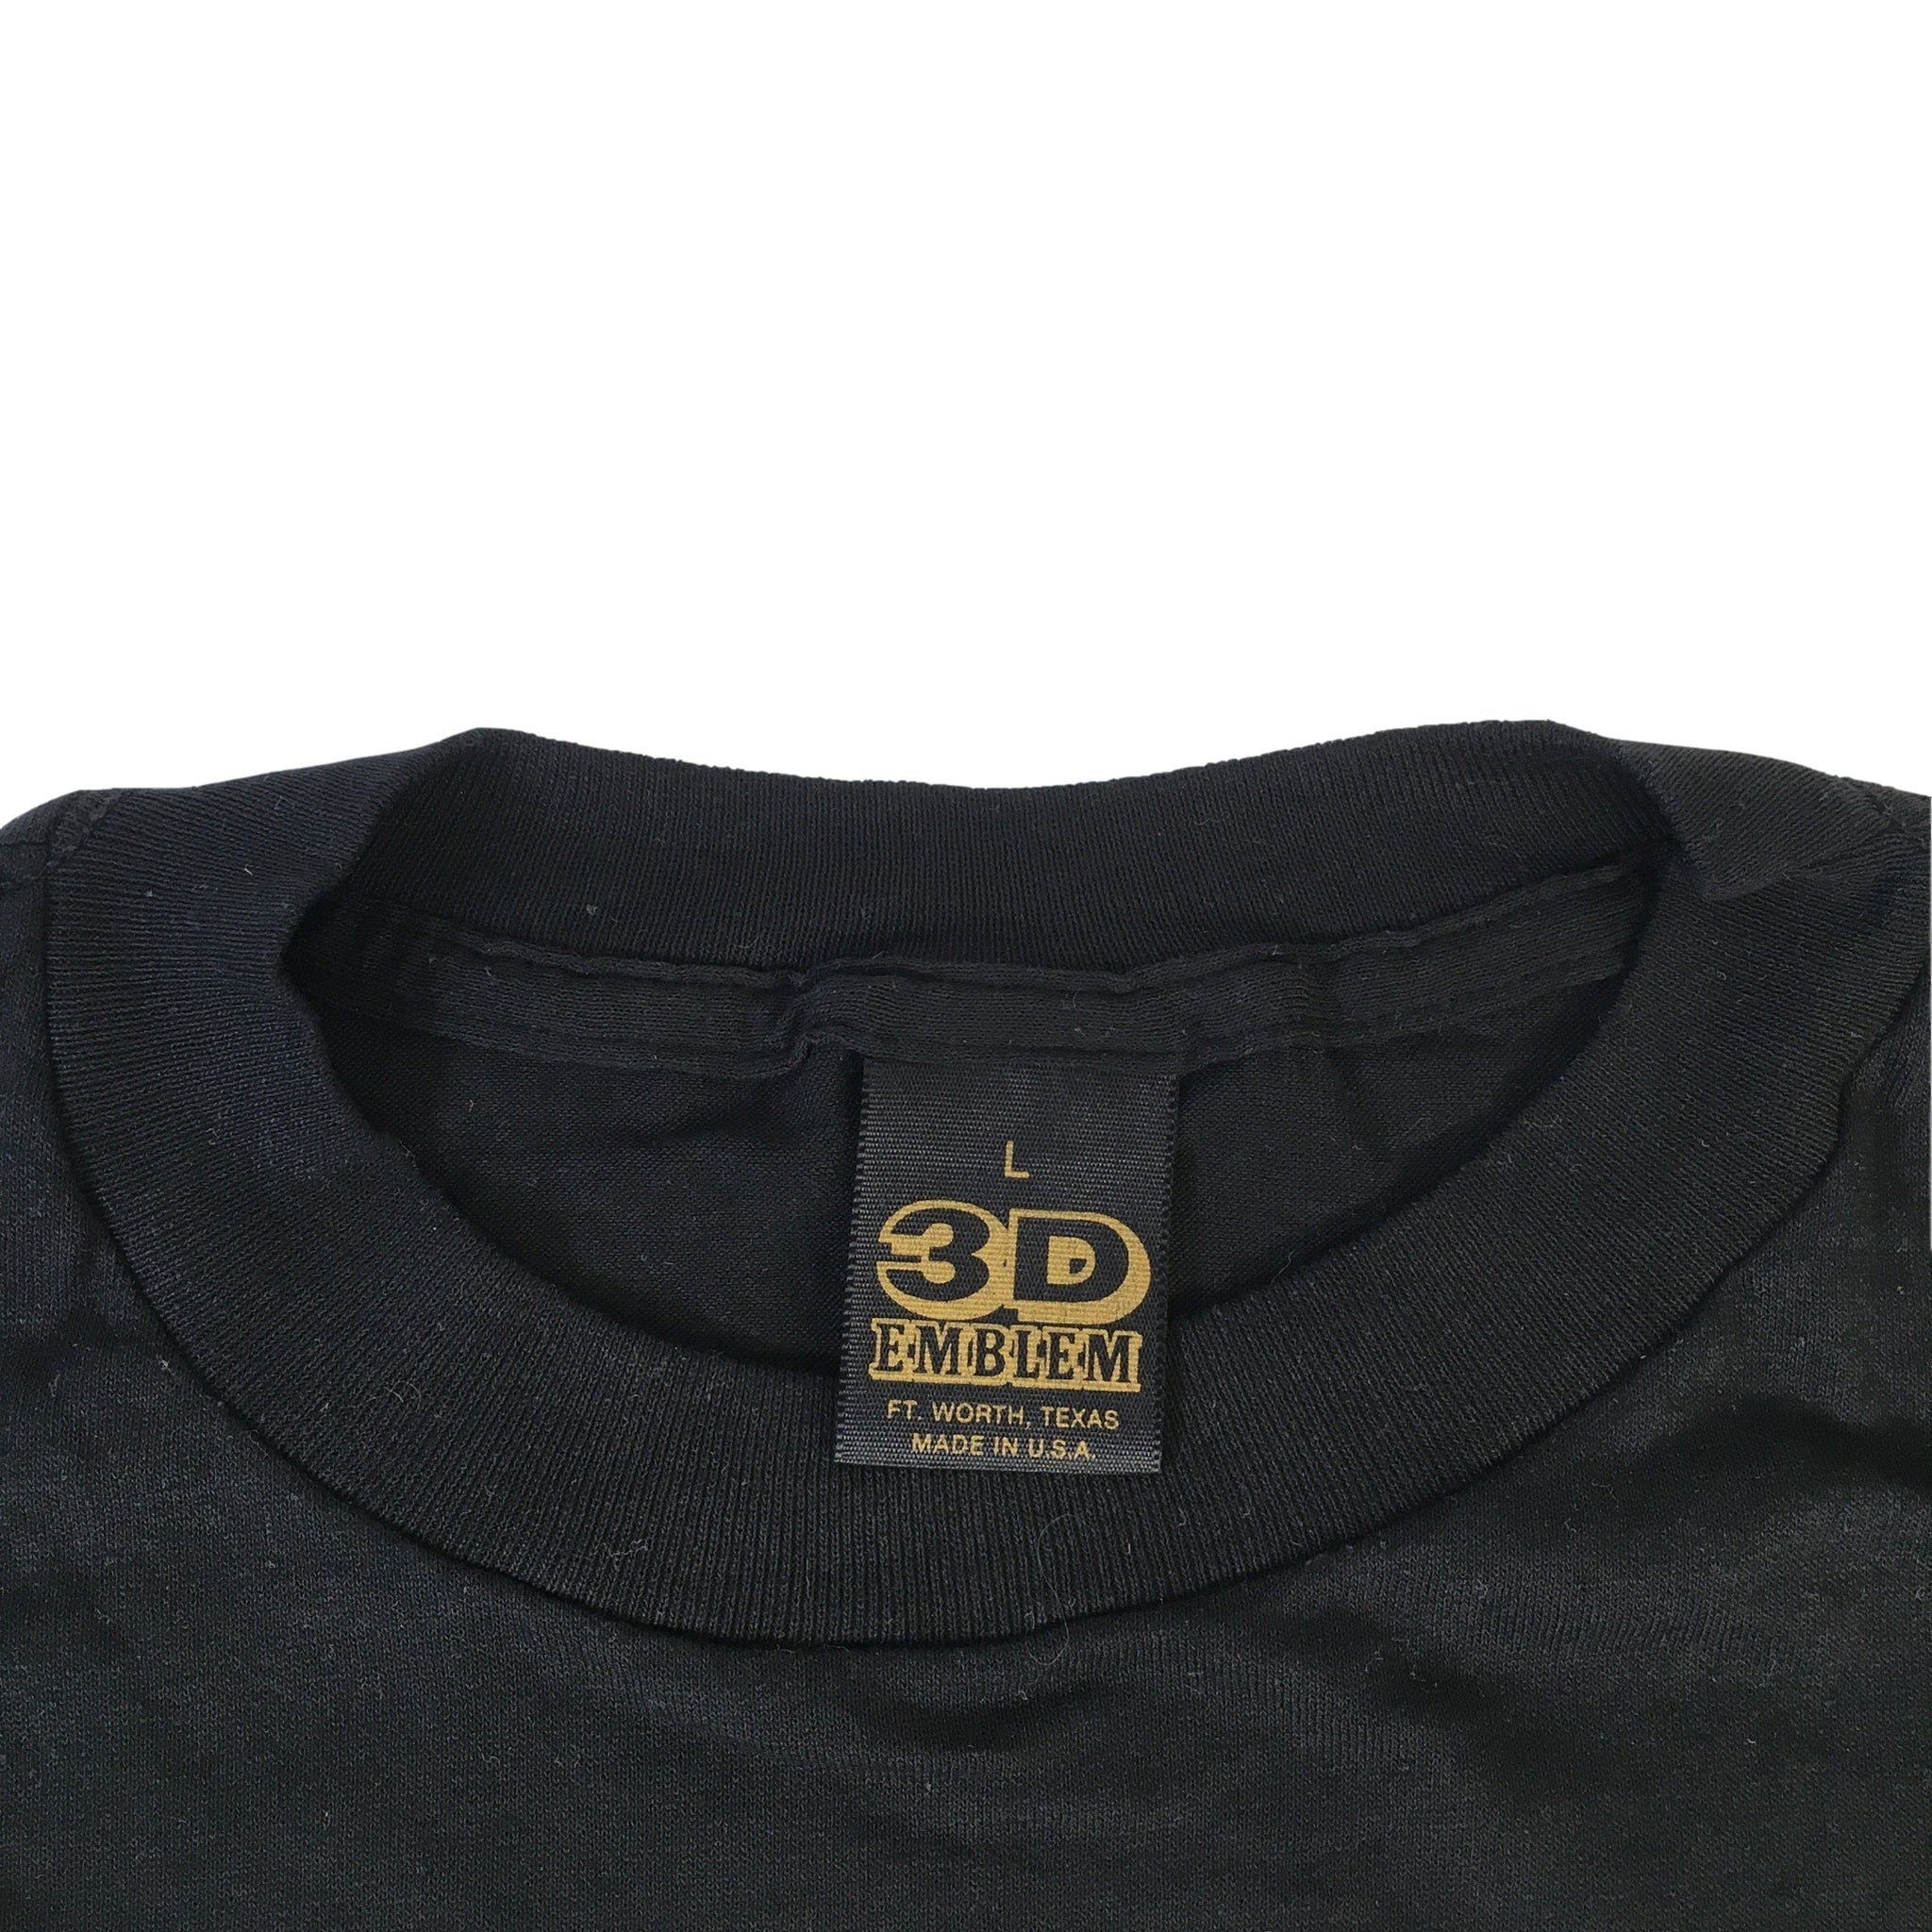 Vintage Just Brass 3D Emblem United States T-Shirt